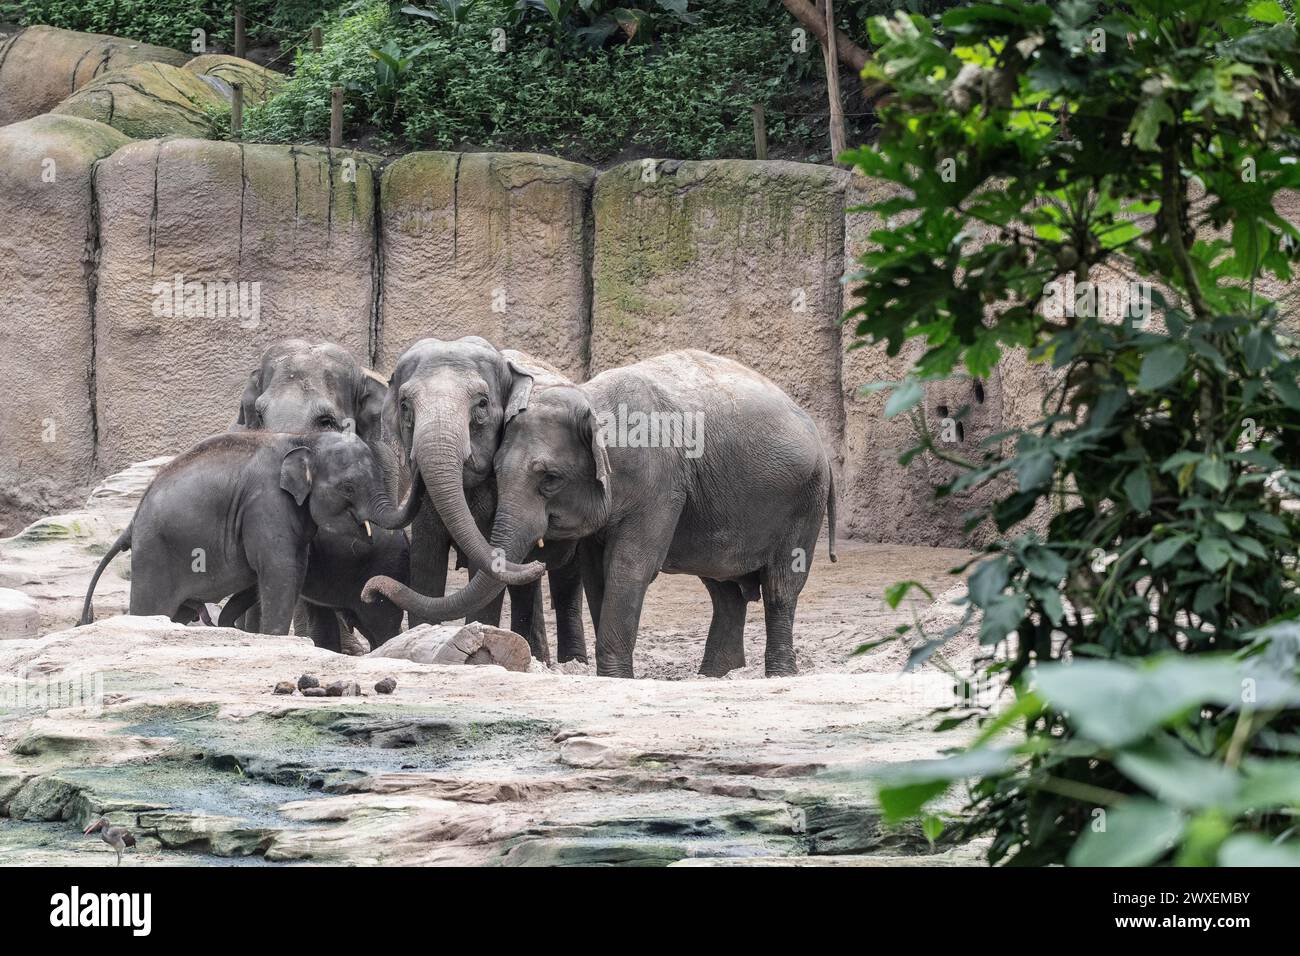 Asian elephants (Elephas maximus), Emmen Zoo, Netherlands Stock Photo